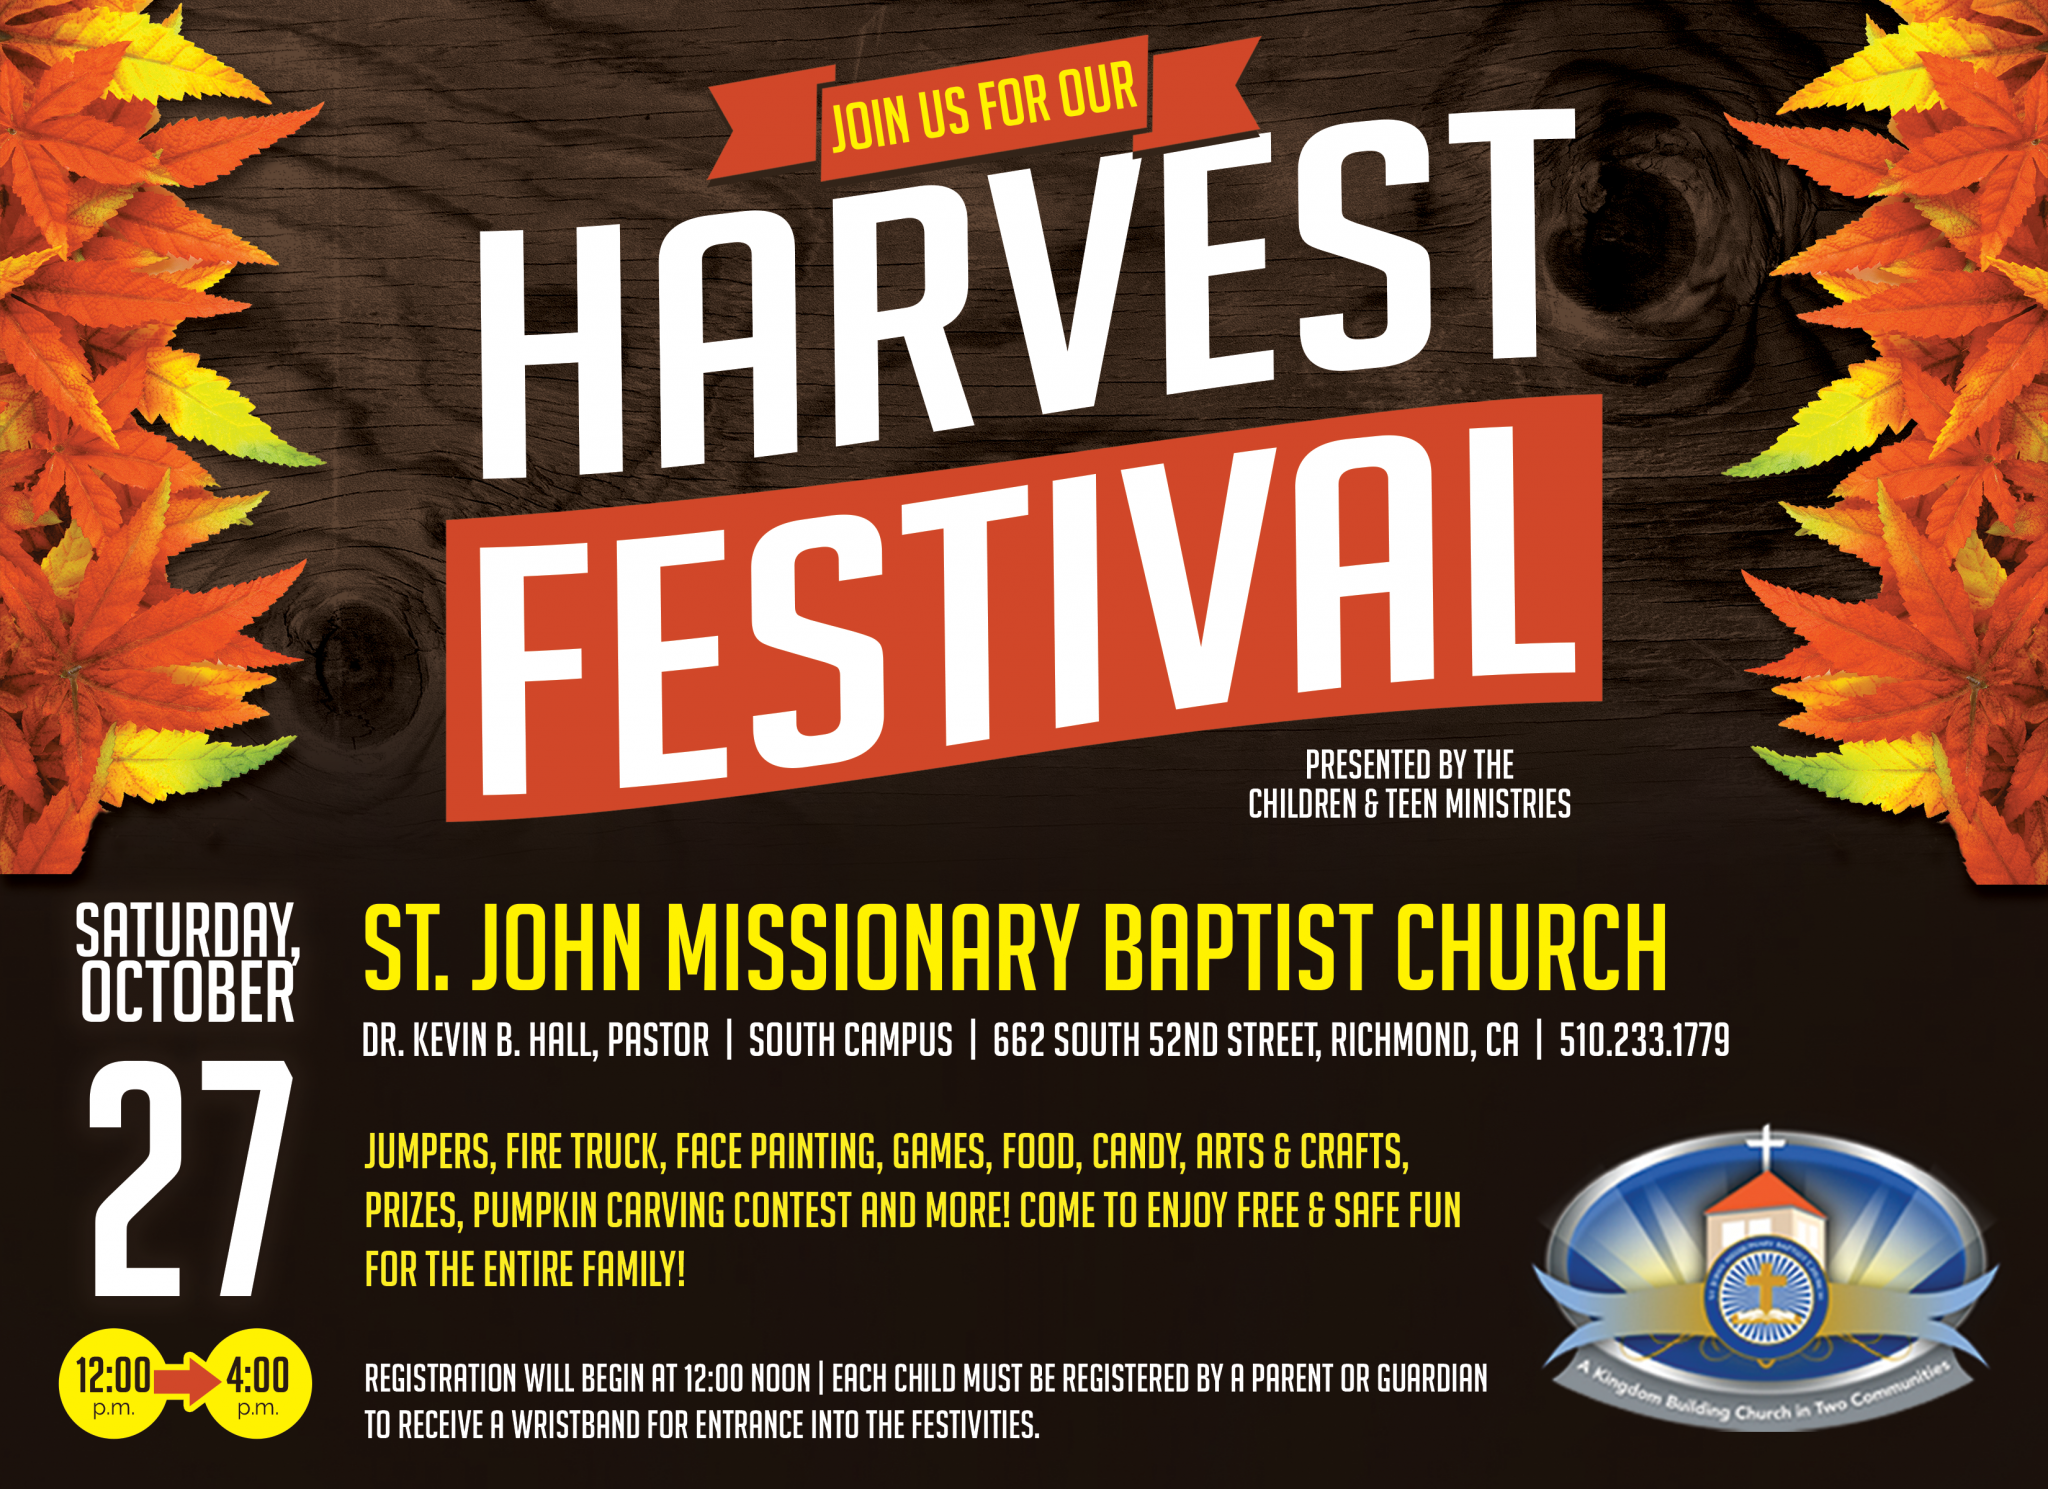 St. John Missionary Baptist Church - Harvest Festival 2018